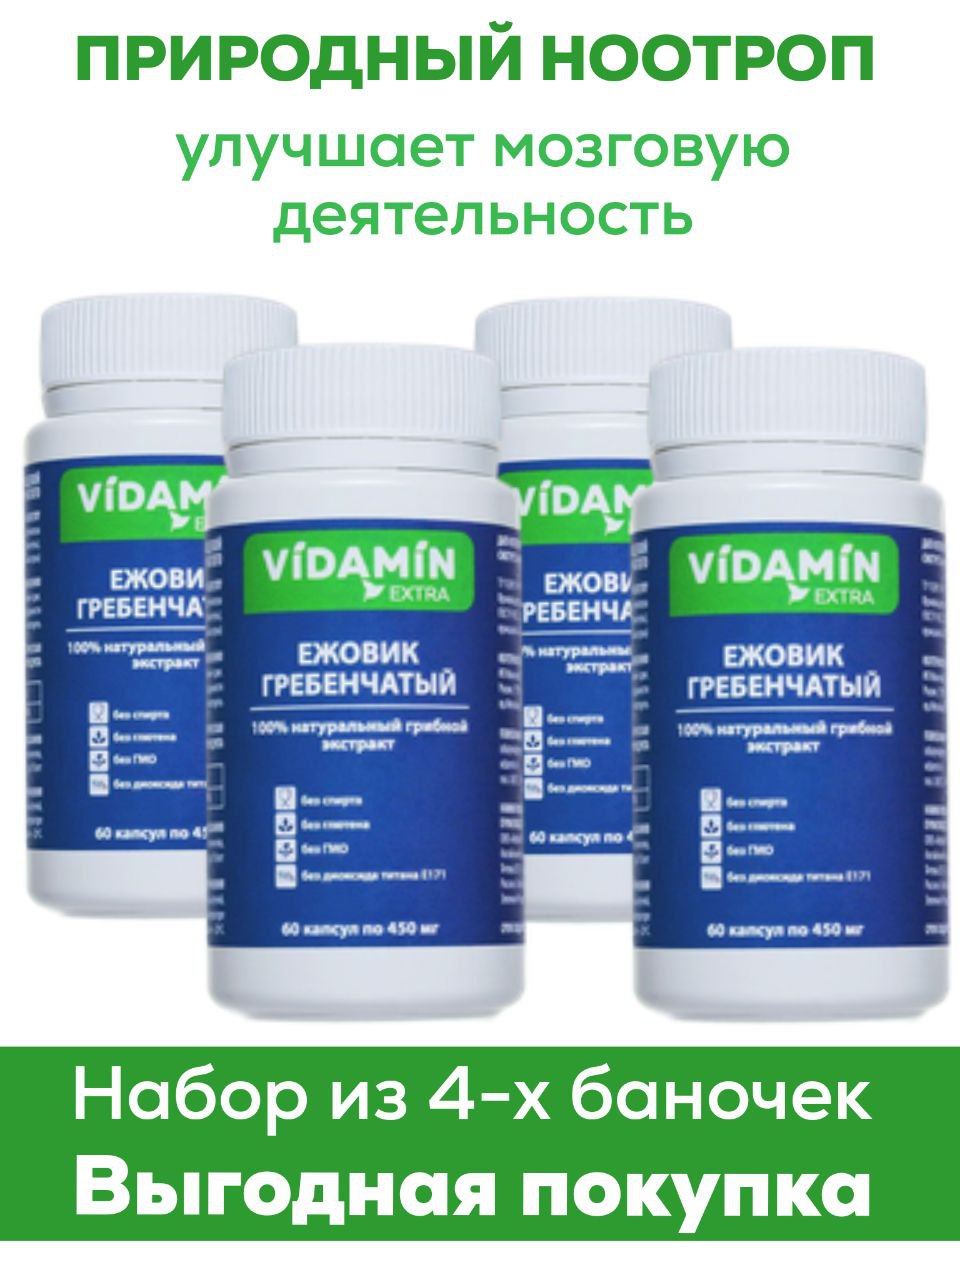 Ежовик Гребенчатый VIDAMIN EXTRA, капсулы 60 шт, 4 упаковки